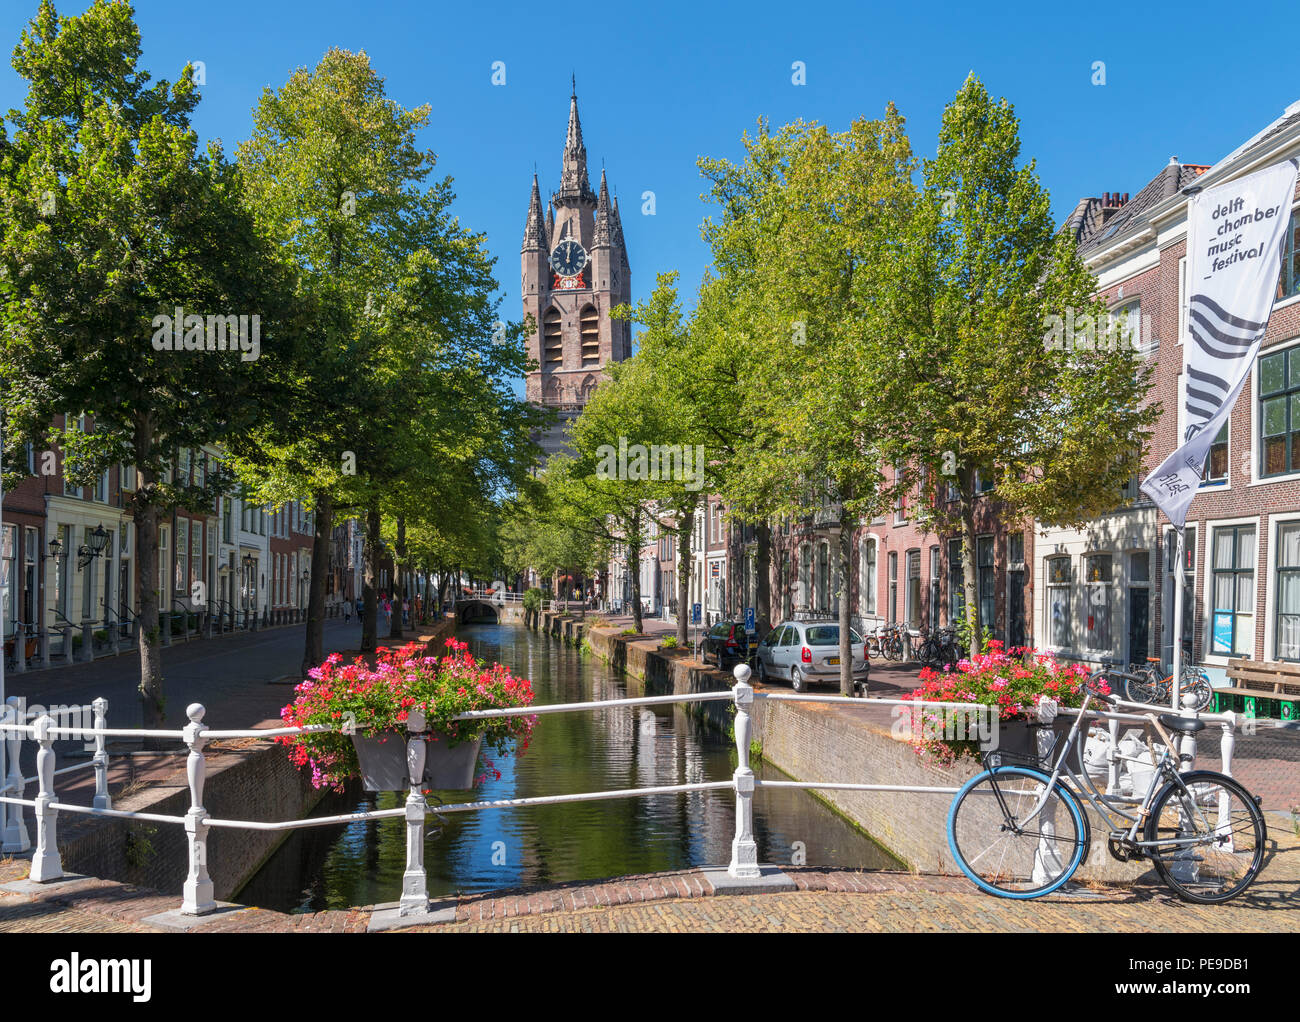 Vue sur le canal en direction de la tour de l'historique 14e siècle Oude Kerk (vieille église), Delft, Zuid-Holland (Hollande méridionale), Pays-Bas Banque D'Images